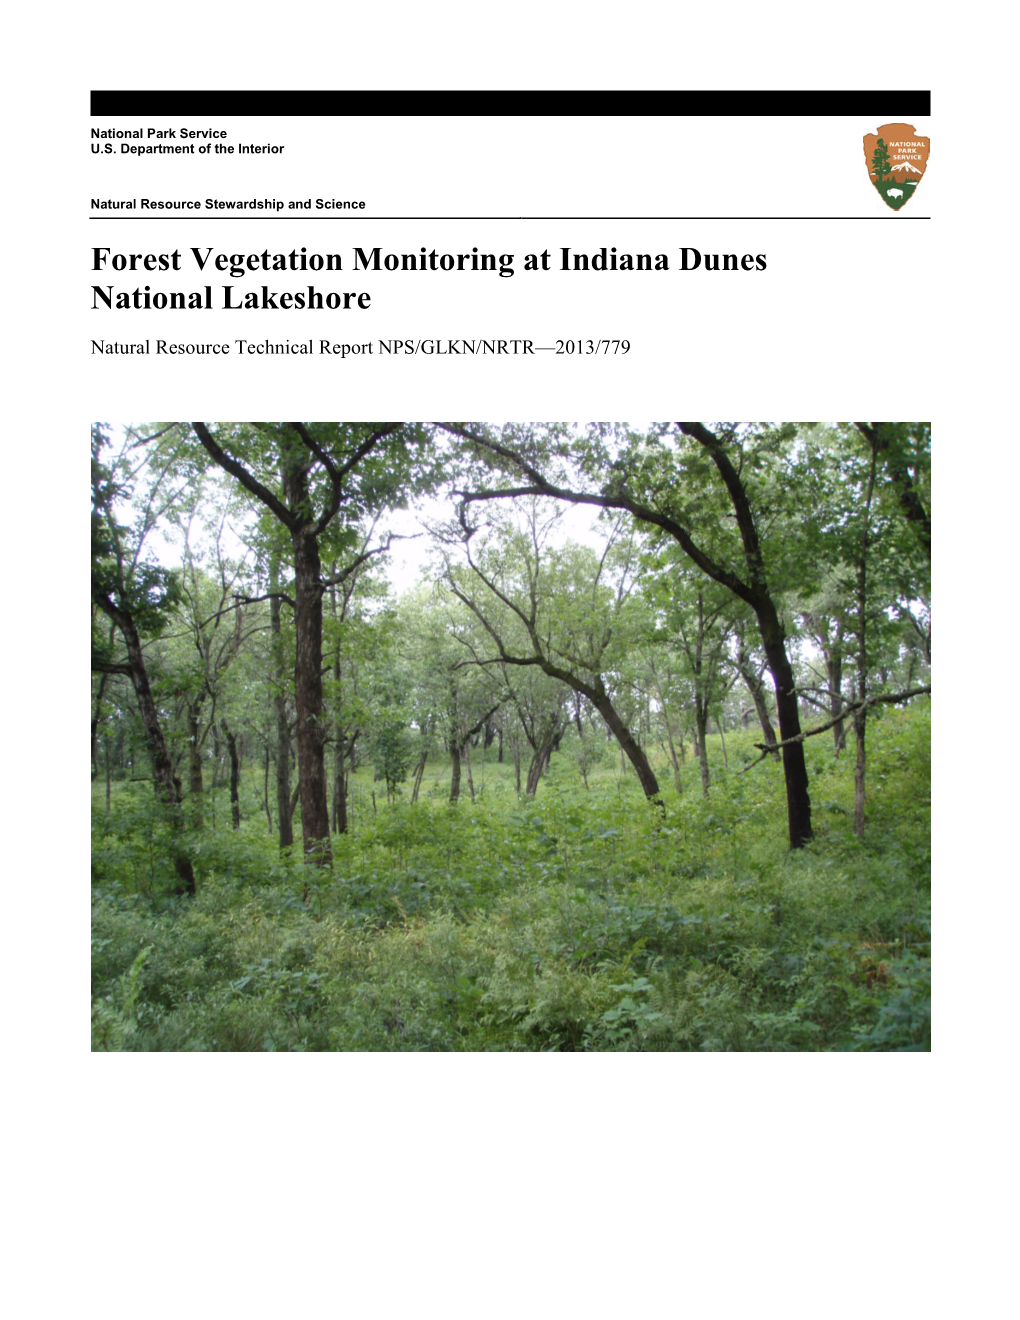 Forest Vegetation Monitoring at Indiana Dunes National Lakeshore